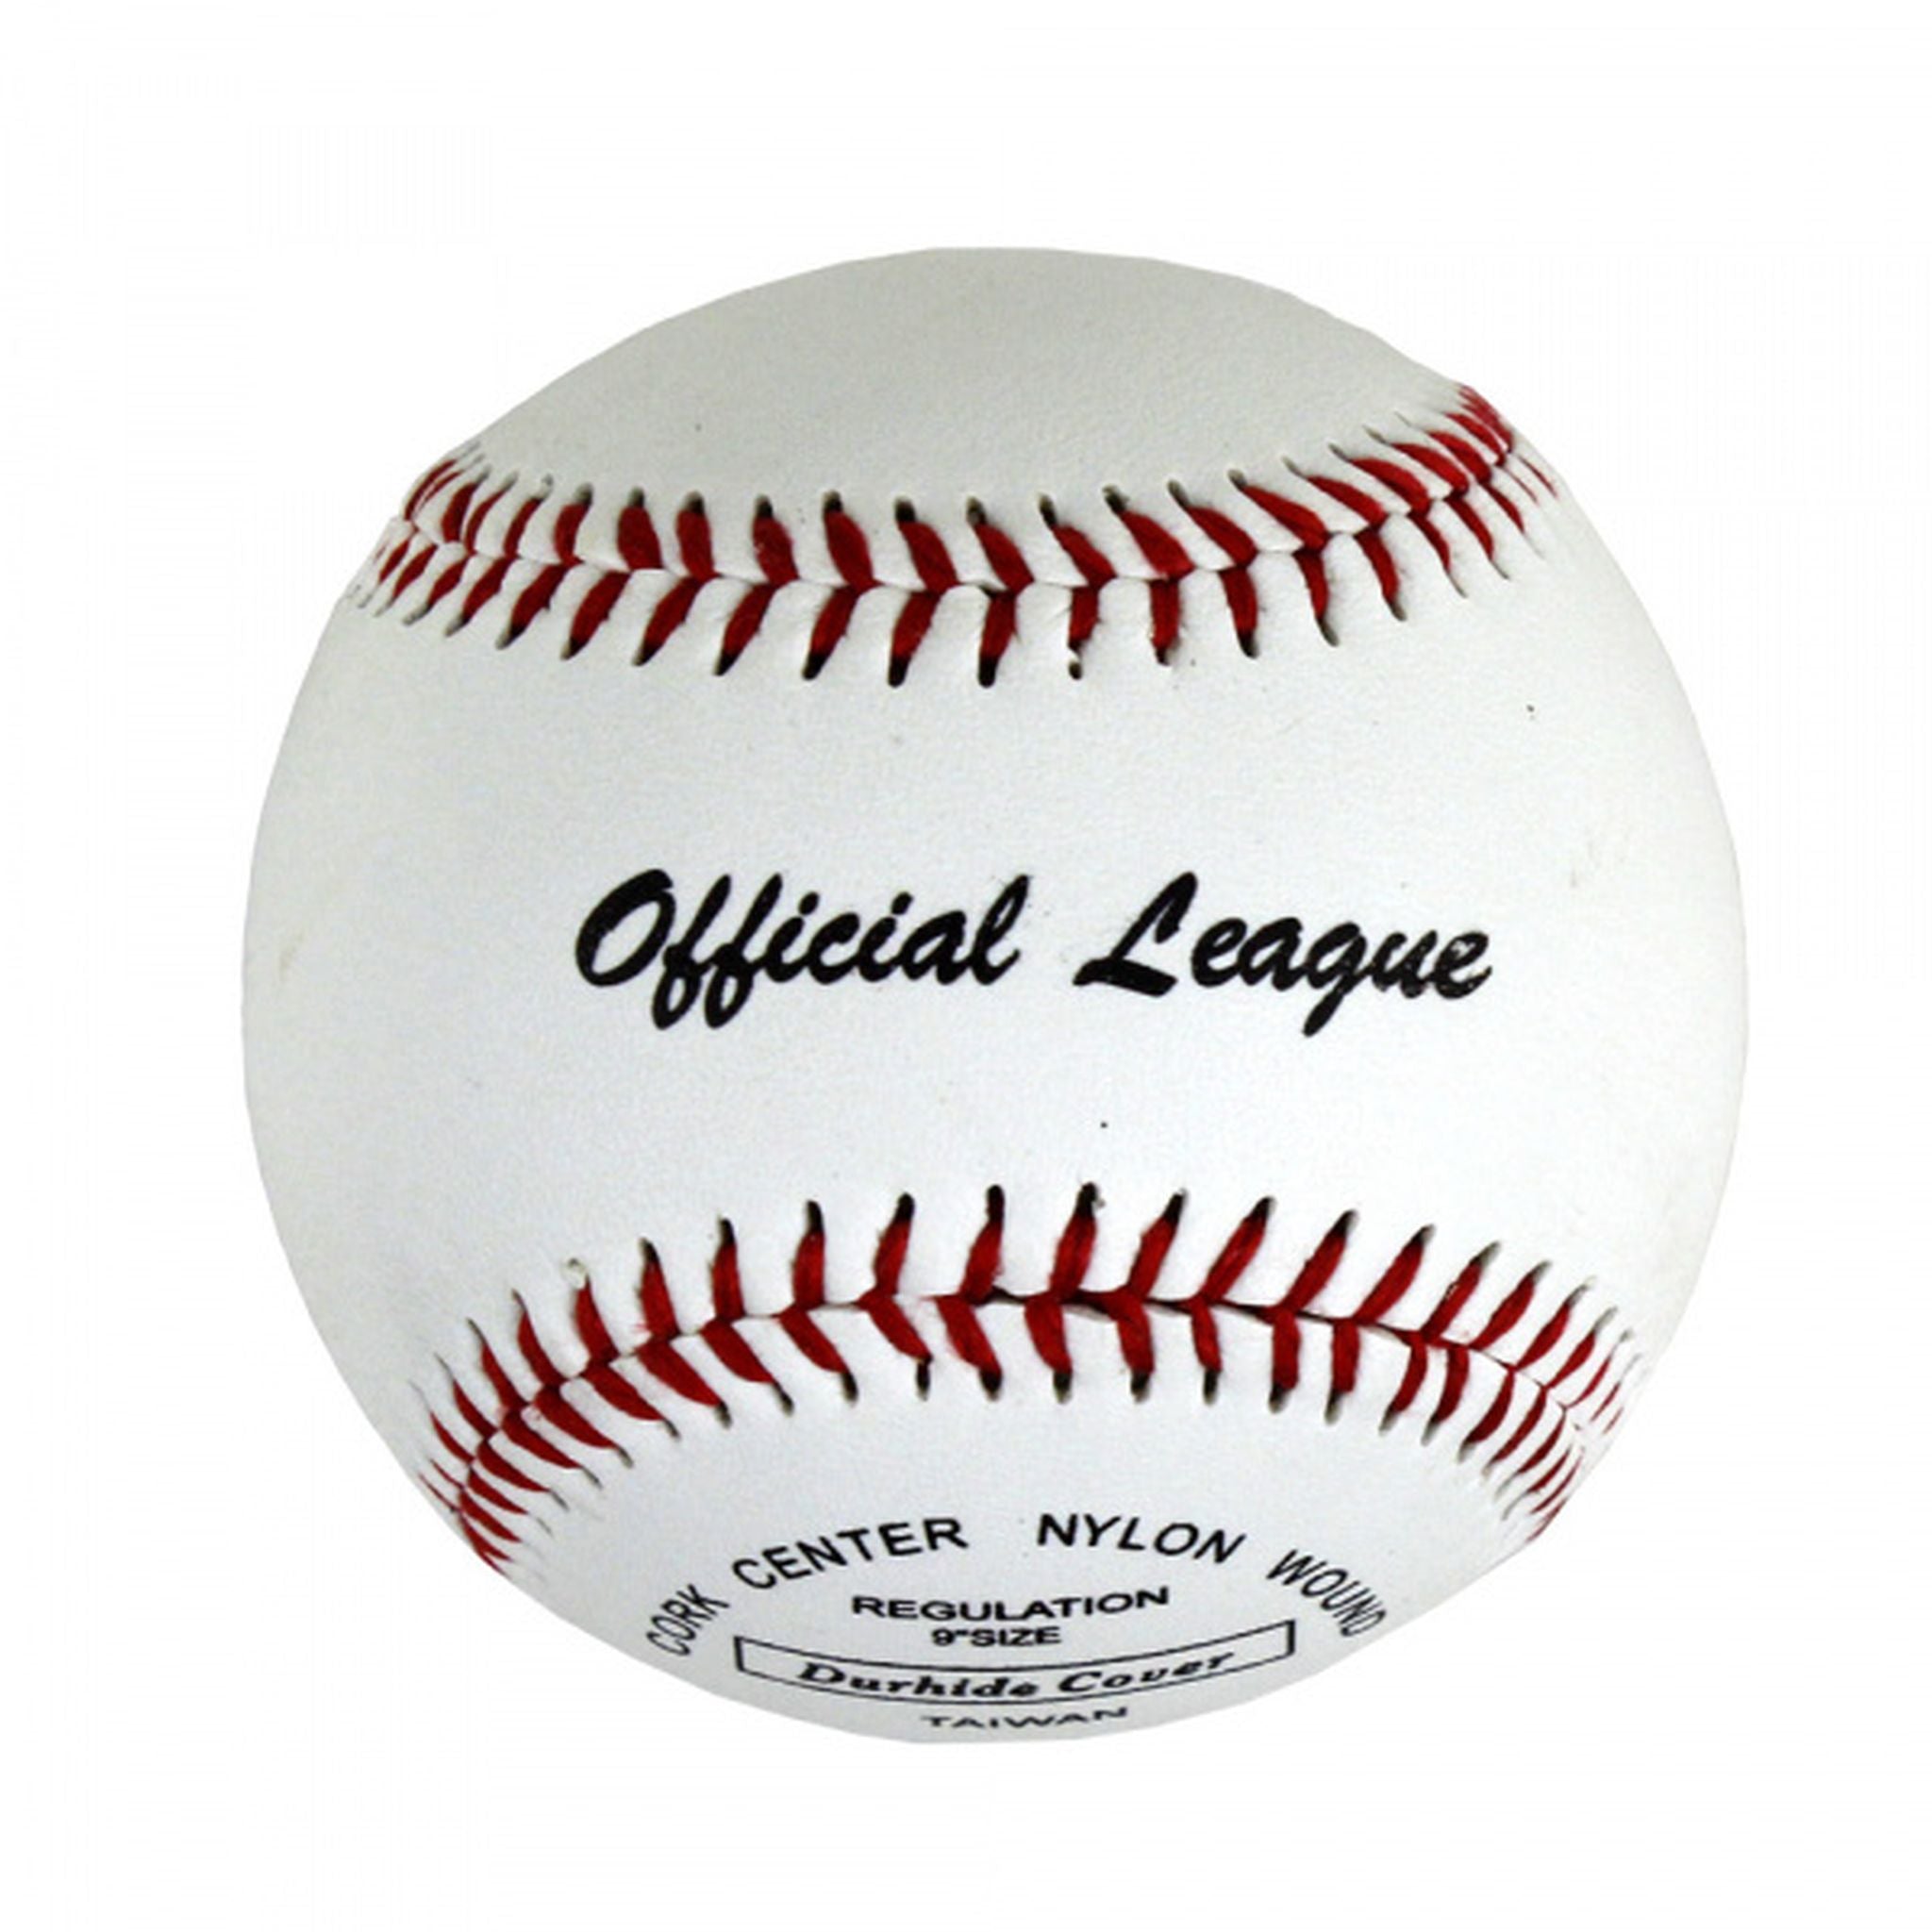 Regent 2726 Nylon Baseball